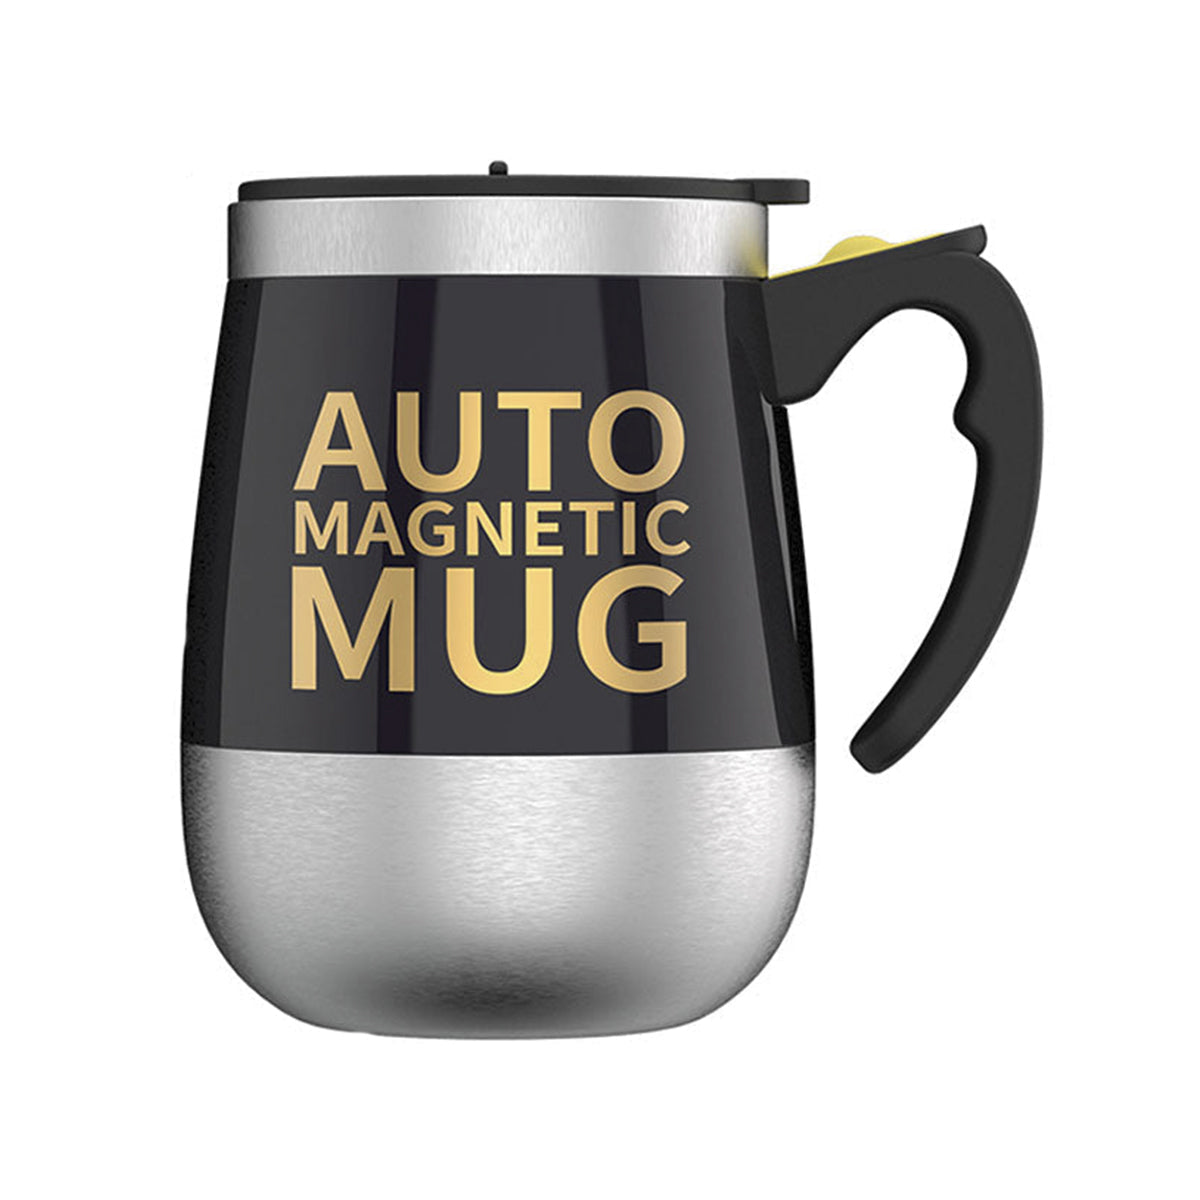 Automatic Magnetic-Stirring Mug